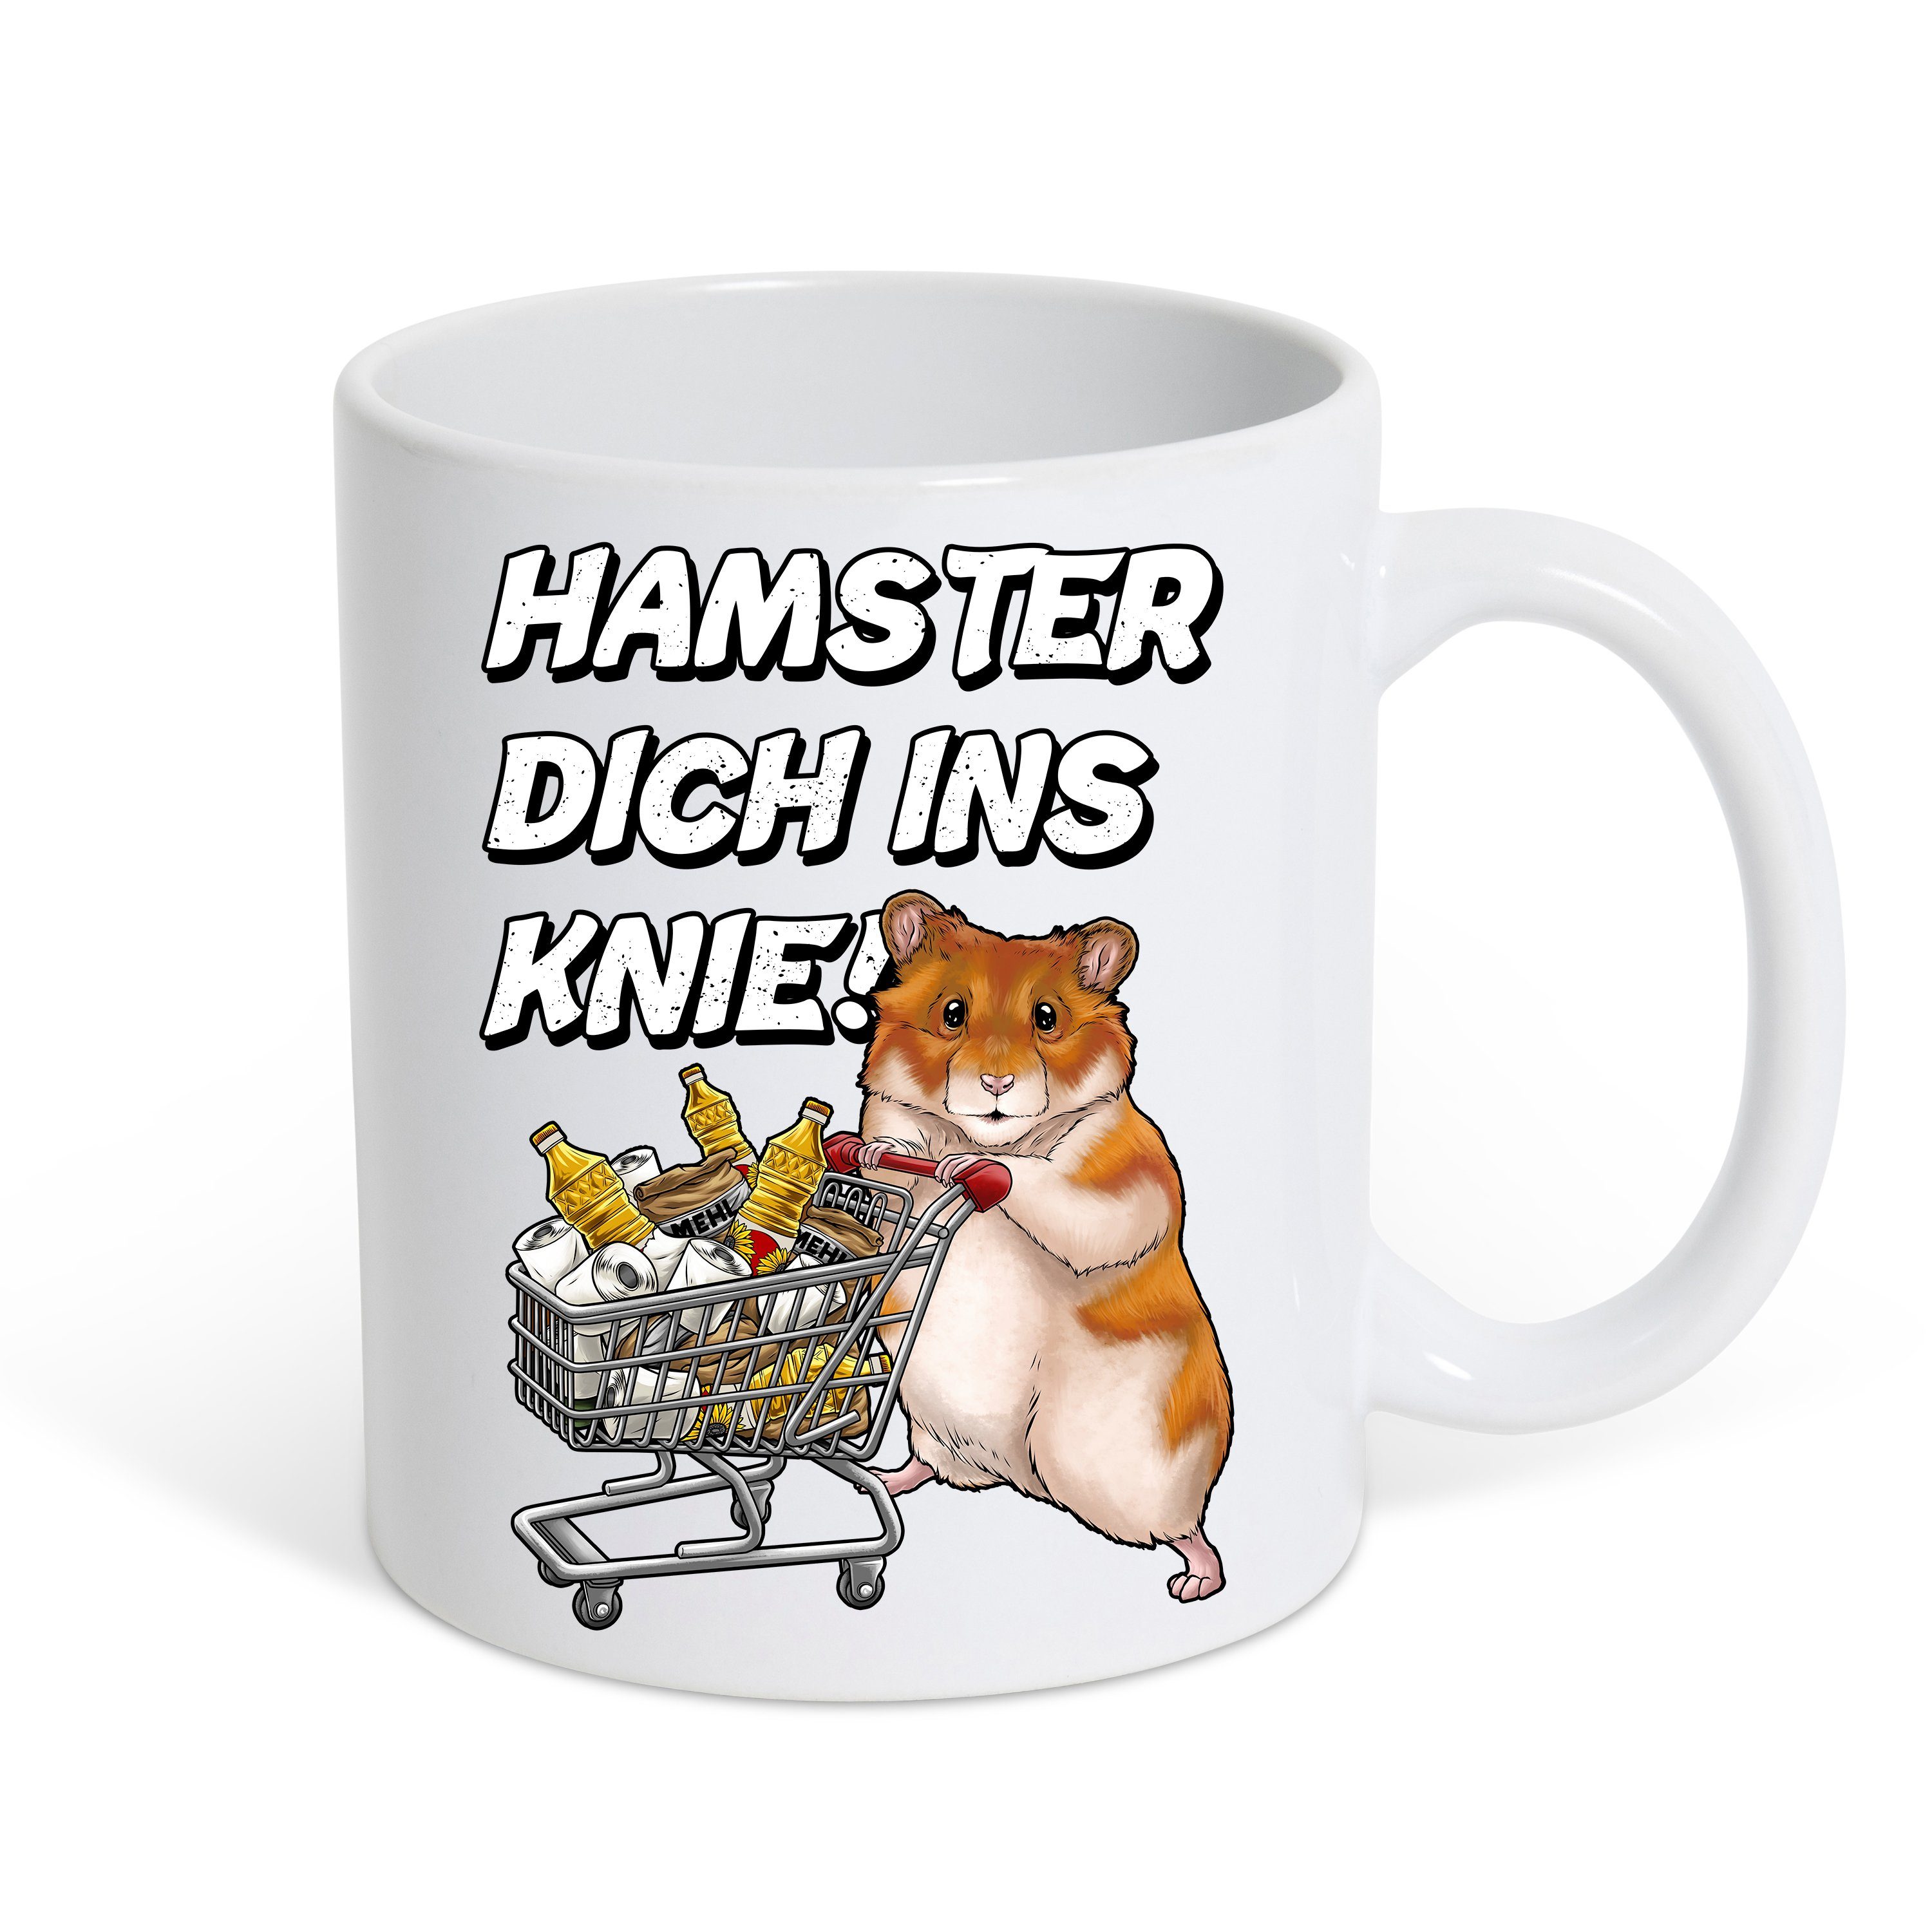 Youth Designz Tasse Hamster Dich Ins Knie Kaffeetasse Geschenk mit lustigem Fun Print Spruch, Keramik, mit lustigem Hamster Print Weiß